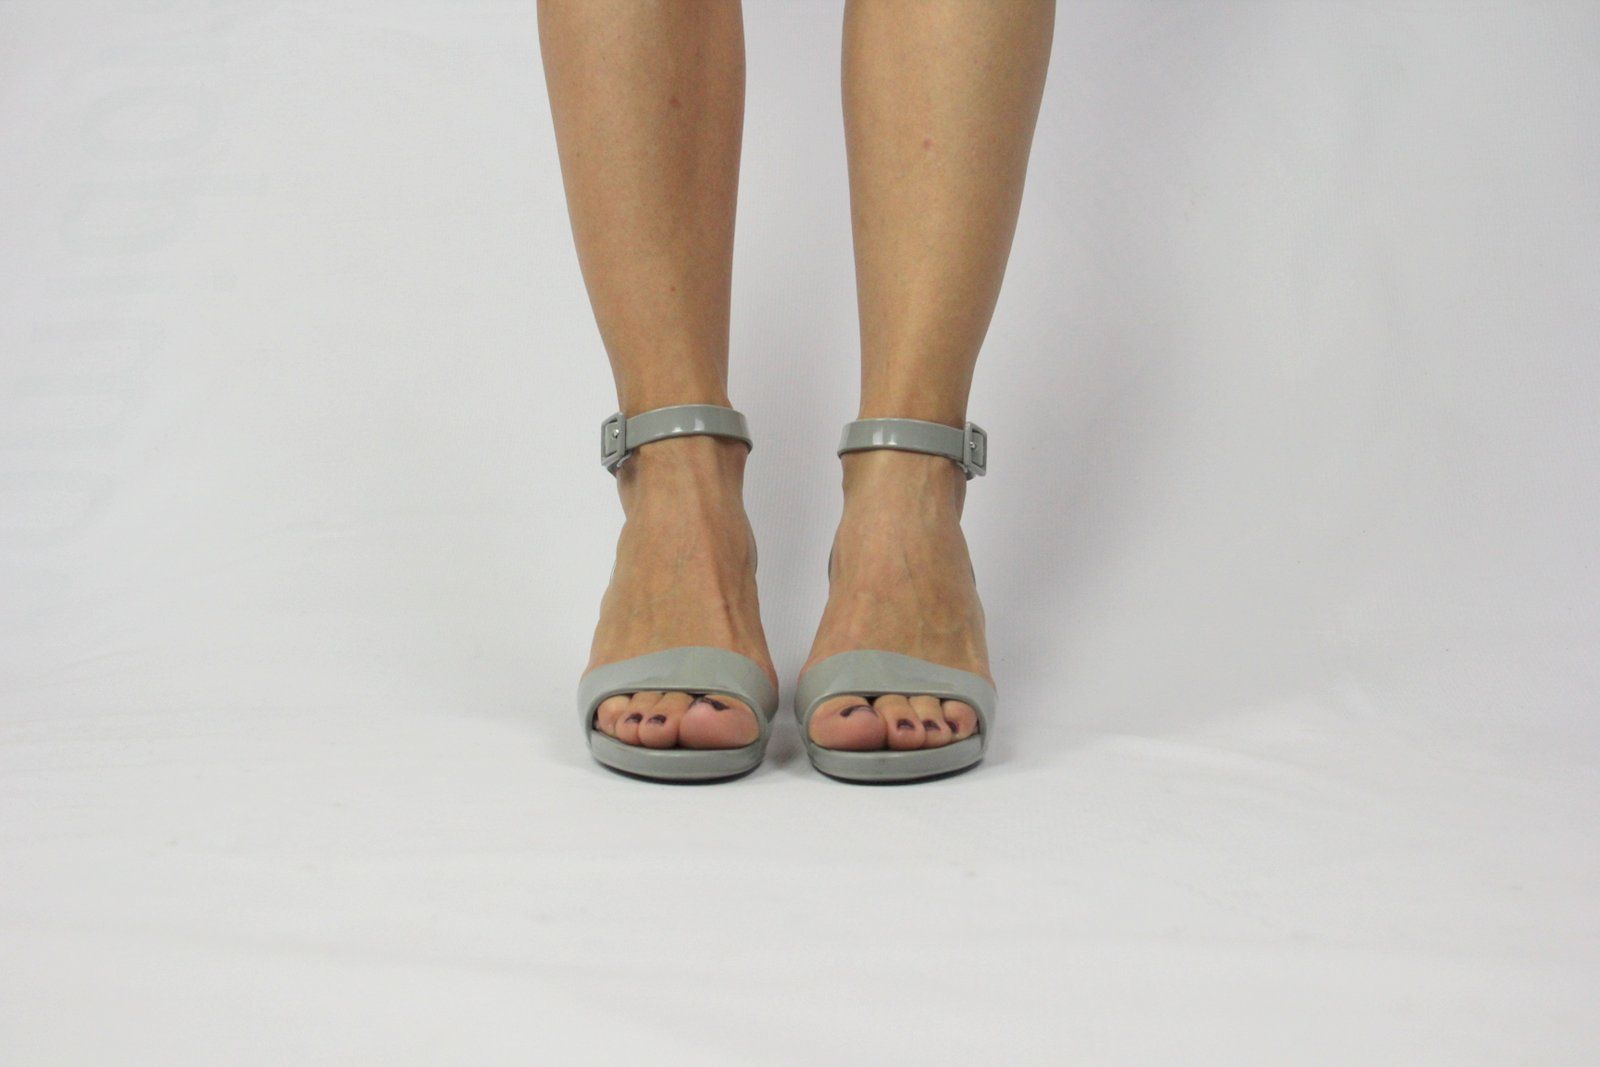 L'AUTRE CHOSE Gray Rubber Heel Sandals, EU 37/UK 4/US 6.5 - secondfirst